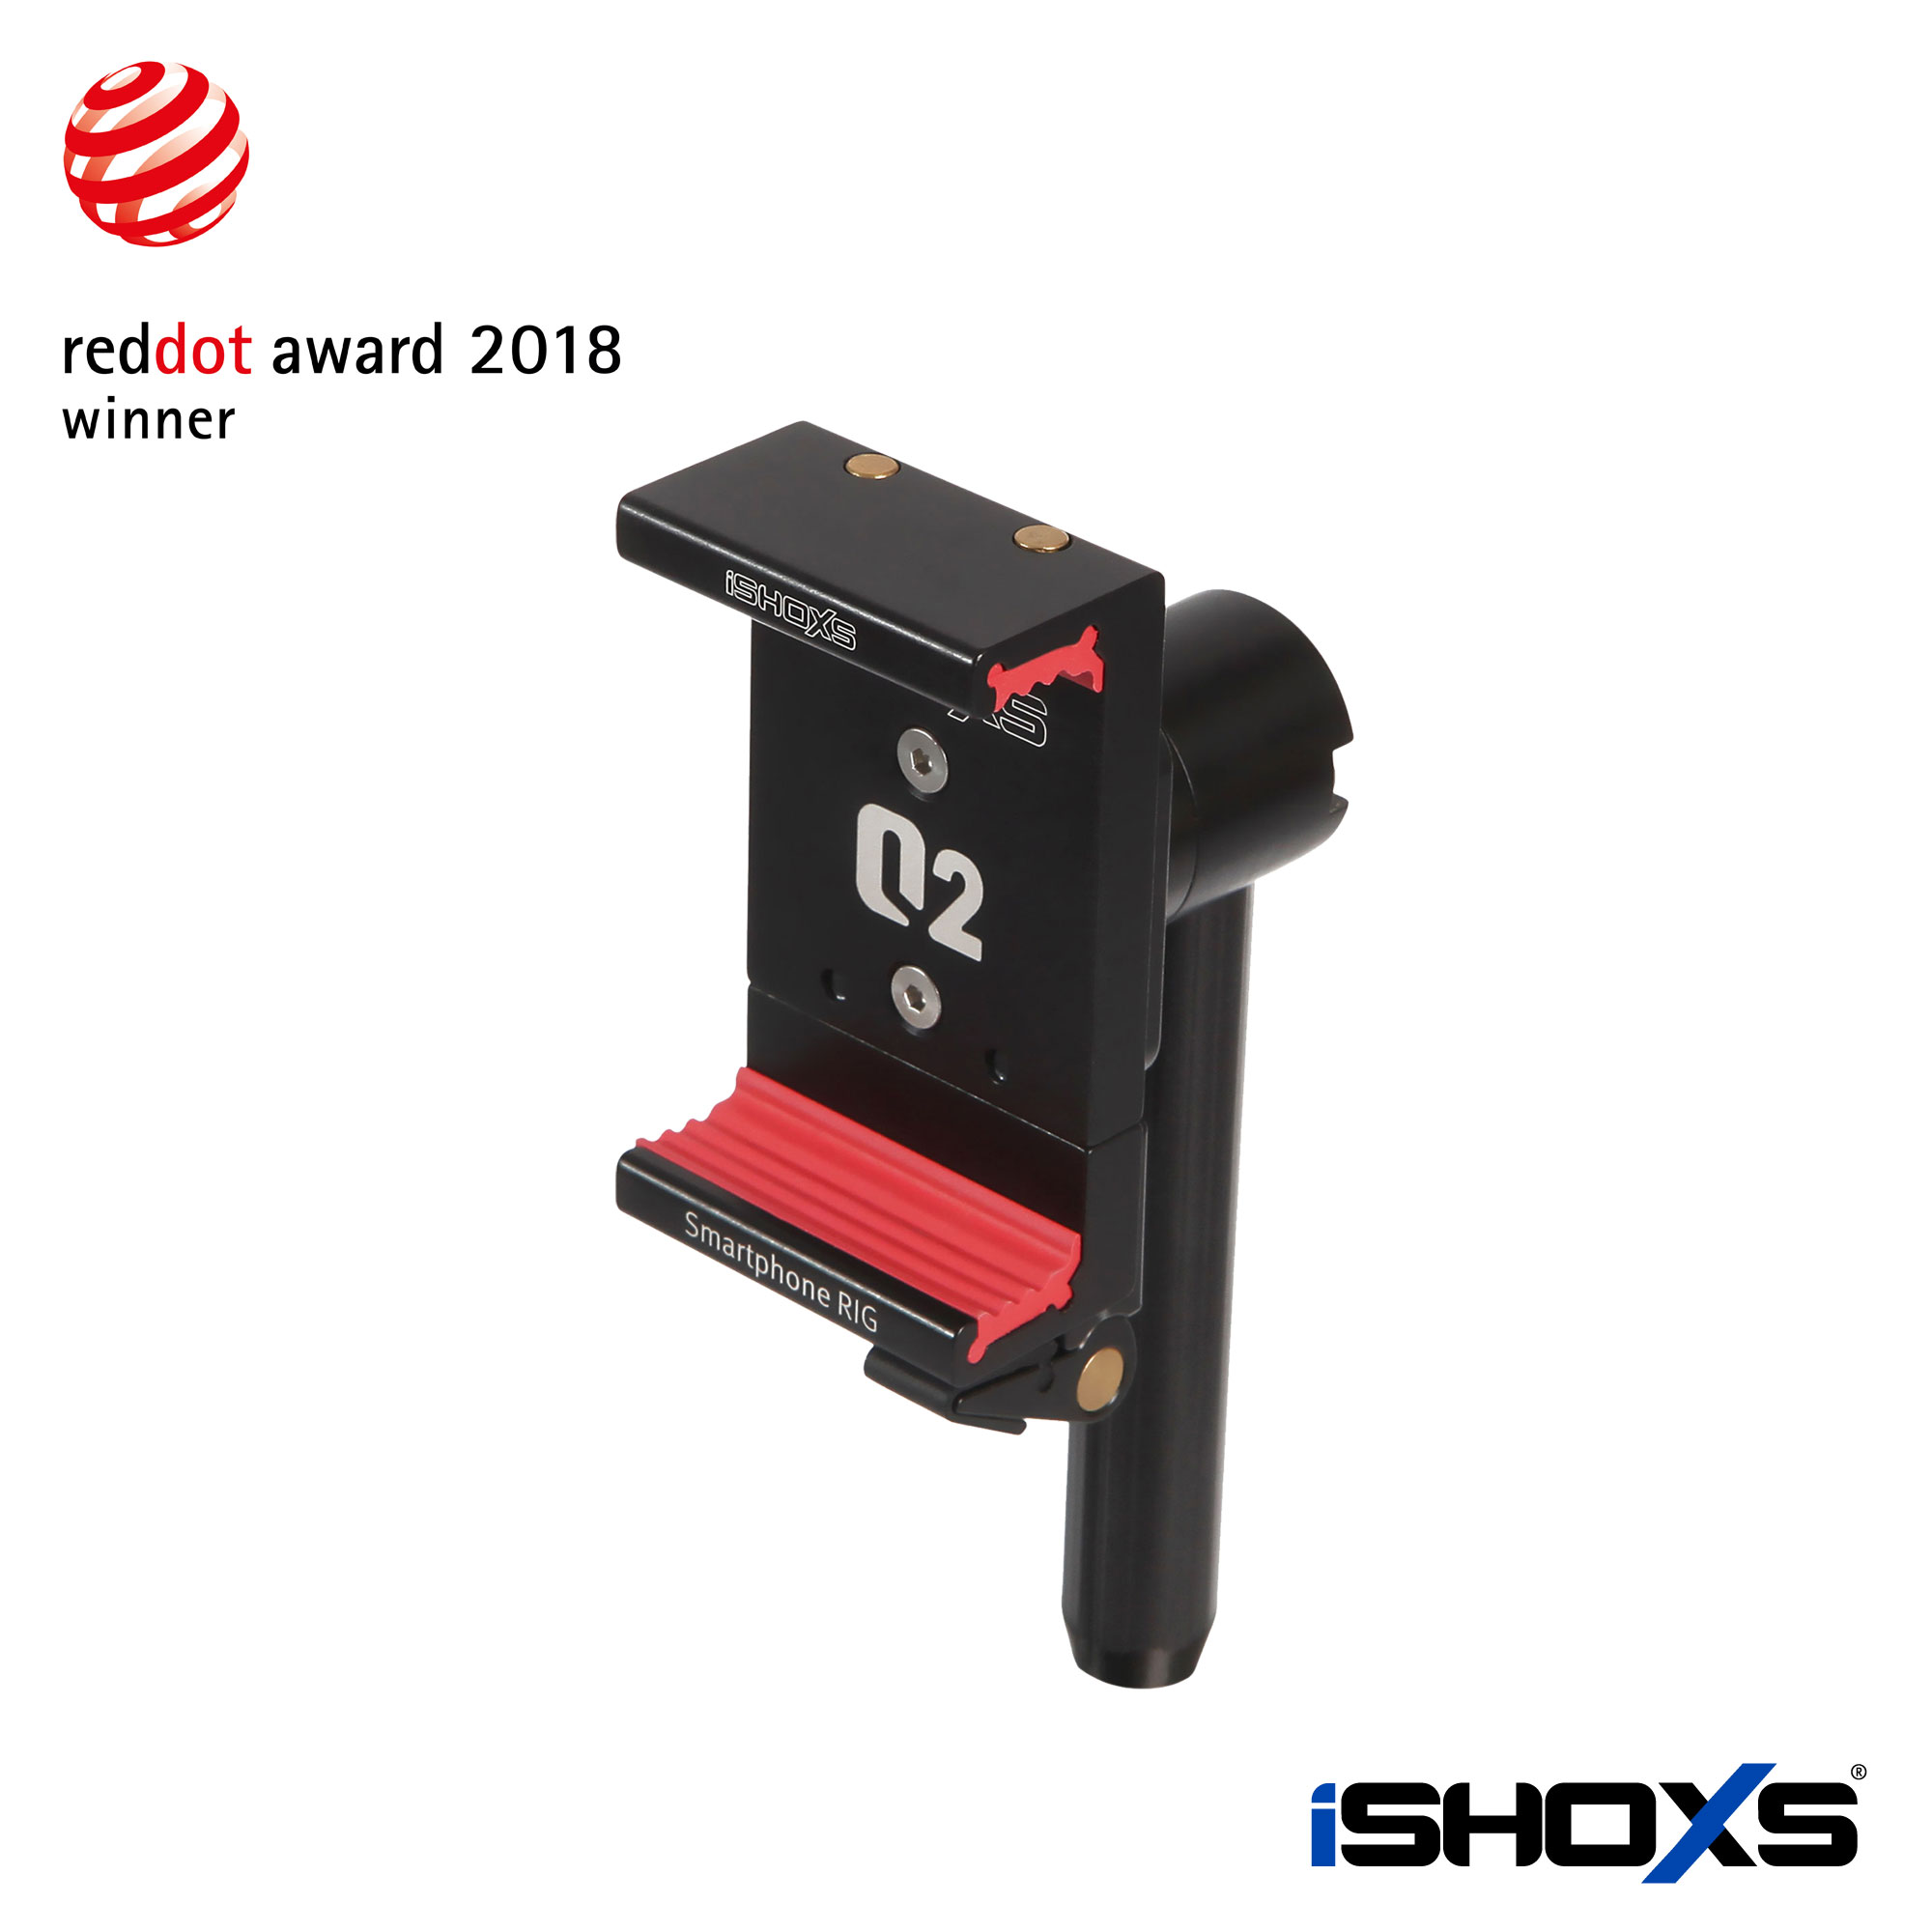 iSHOXS Smartphone-Halterung gewinnt Red Dot Design Award